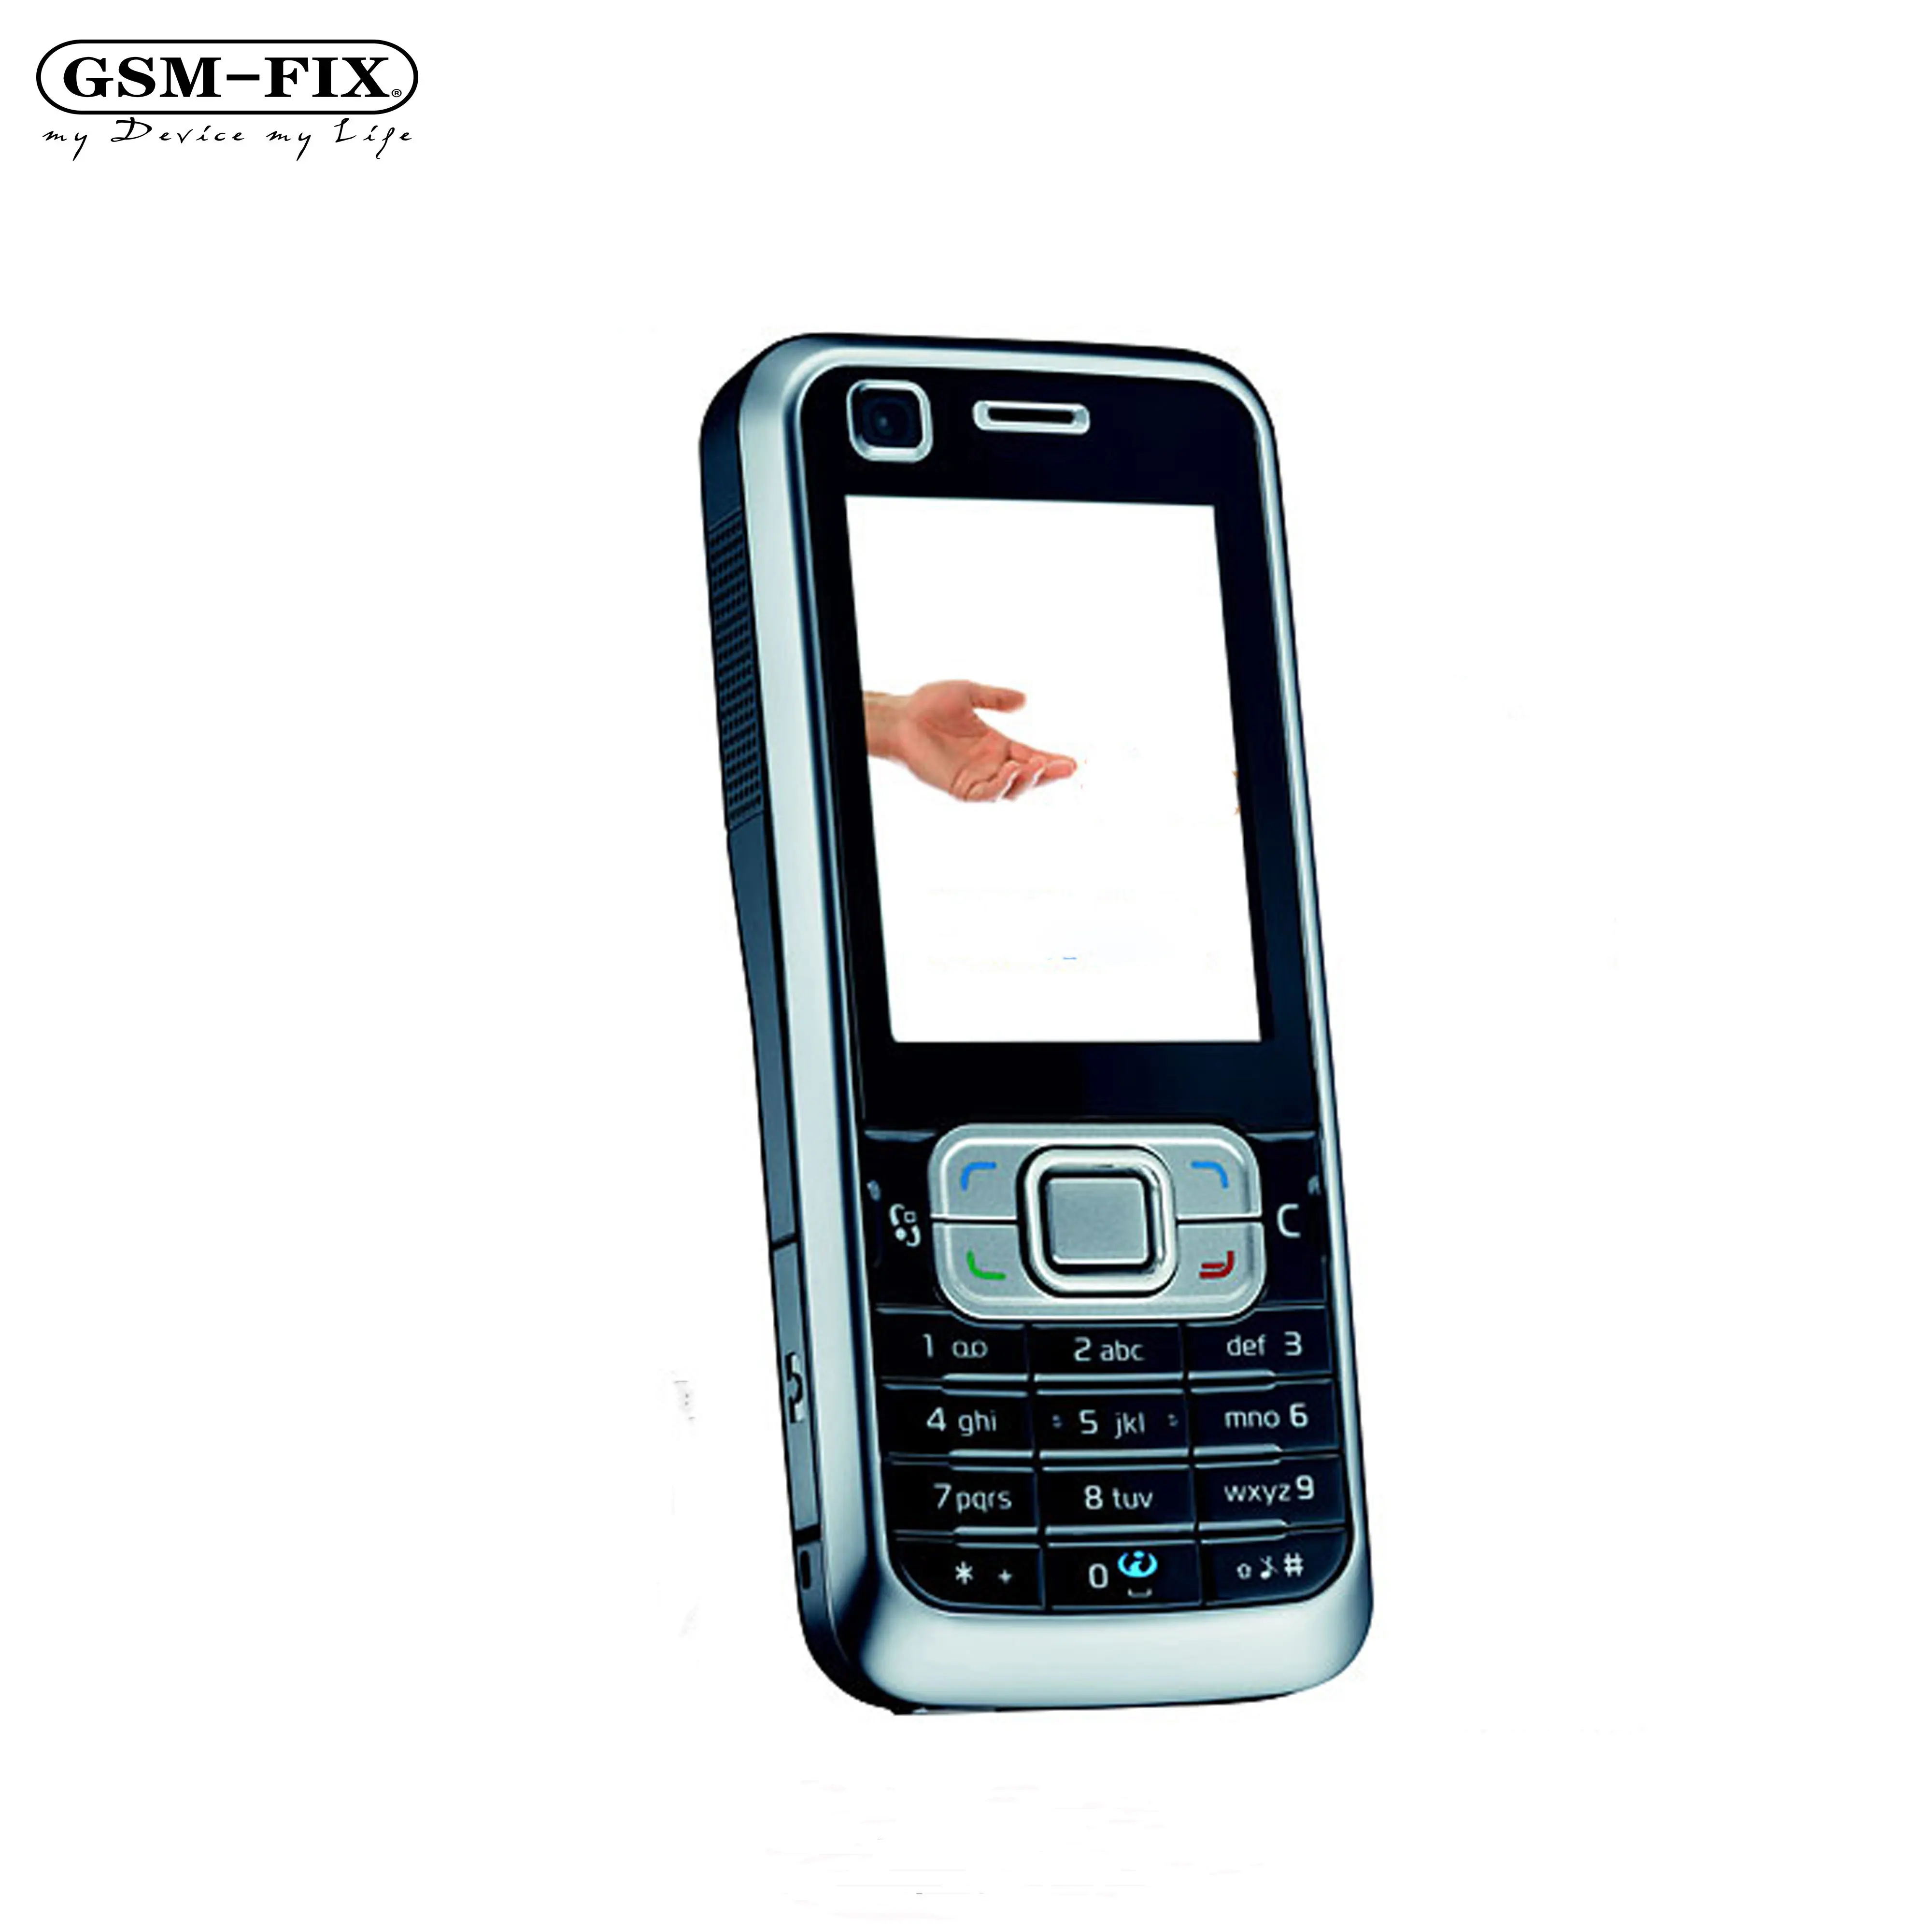 GSM-FIX Original For Nokia 6120 Classic 3G Mobile Phone 2.0'' 2MP Camera Symbian OS Bluetooth FM Unlocked 6120C CellPhone